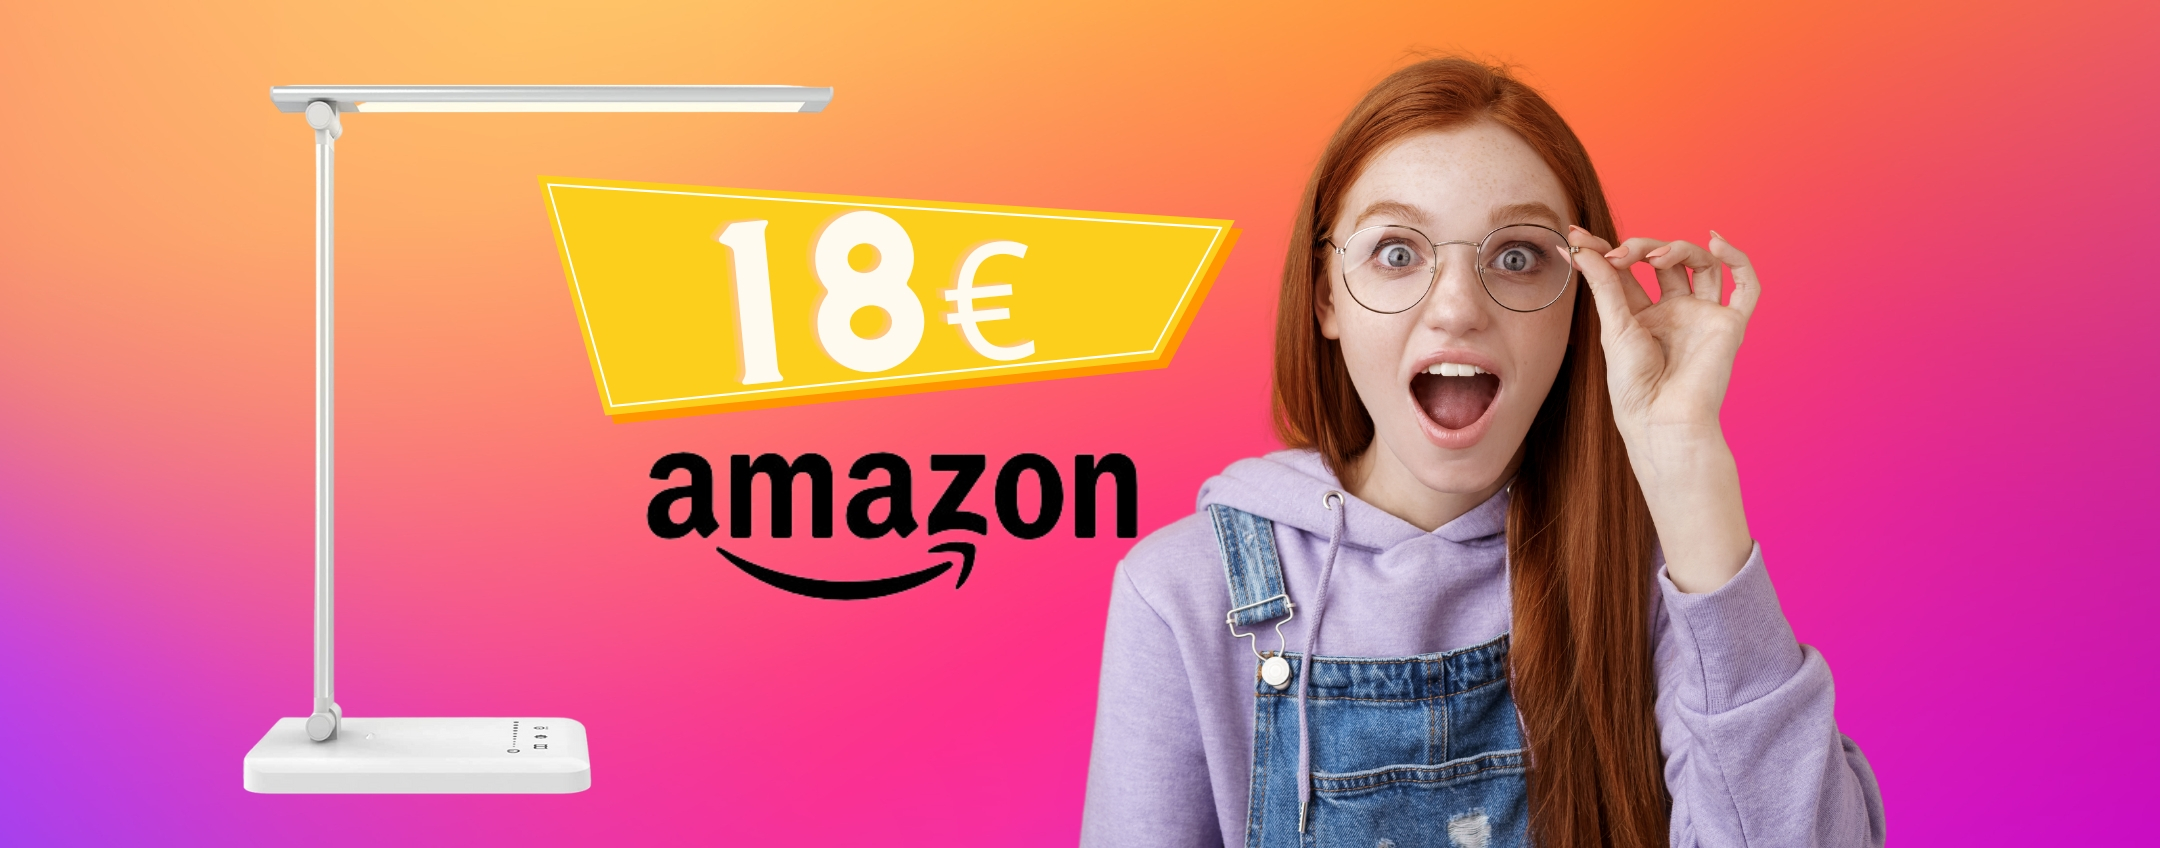 Lampada da scrivania LED a 18€ su Amazon: semplicemente GENIALE